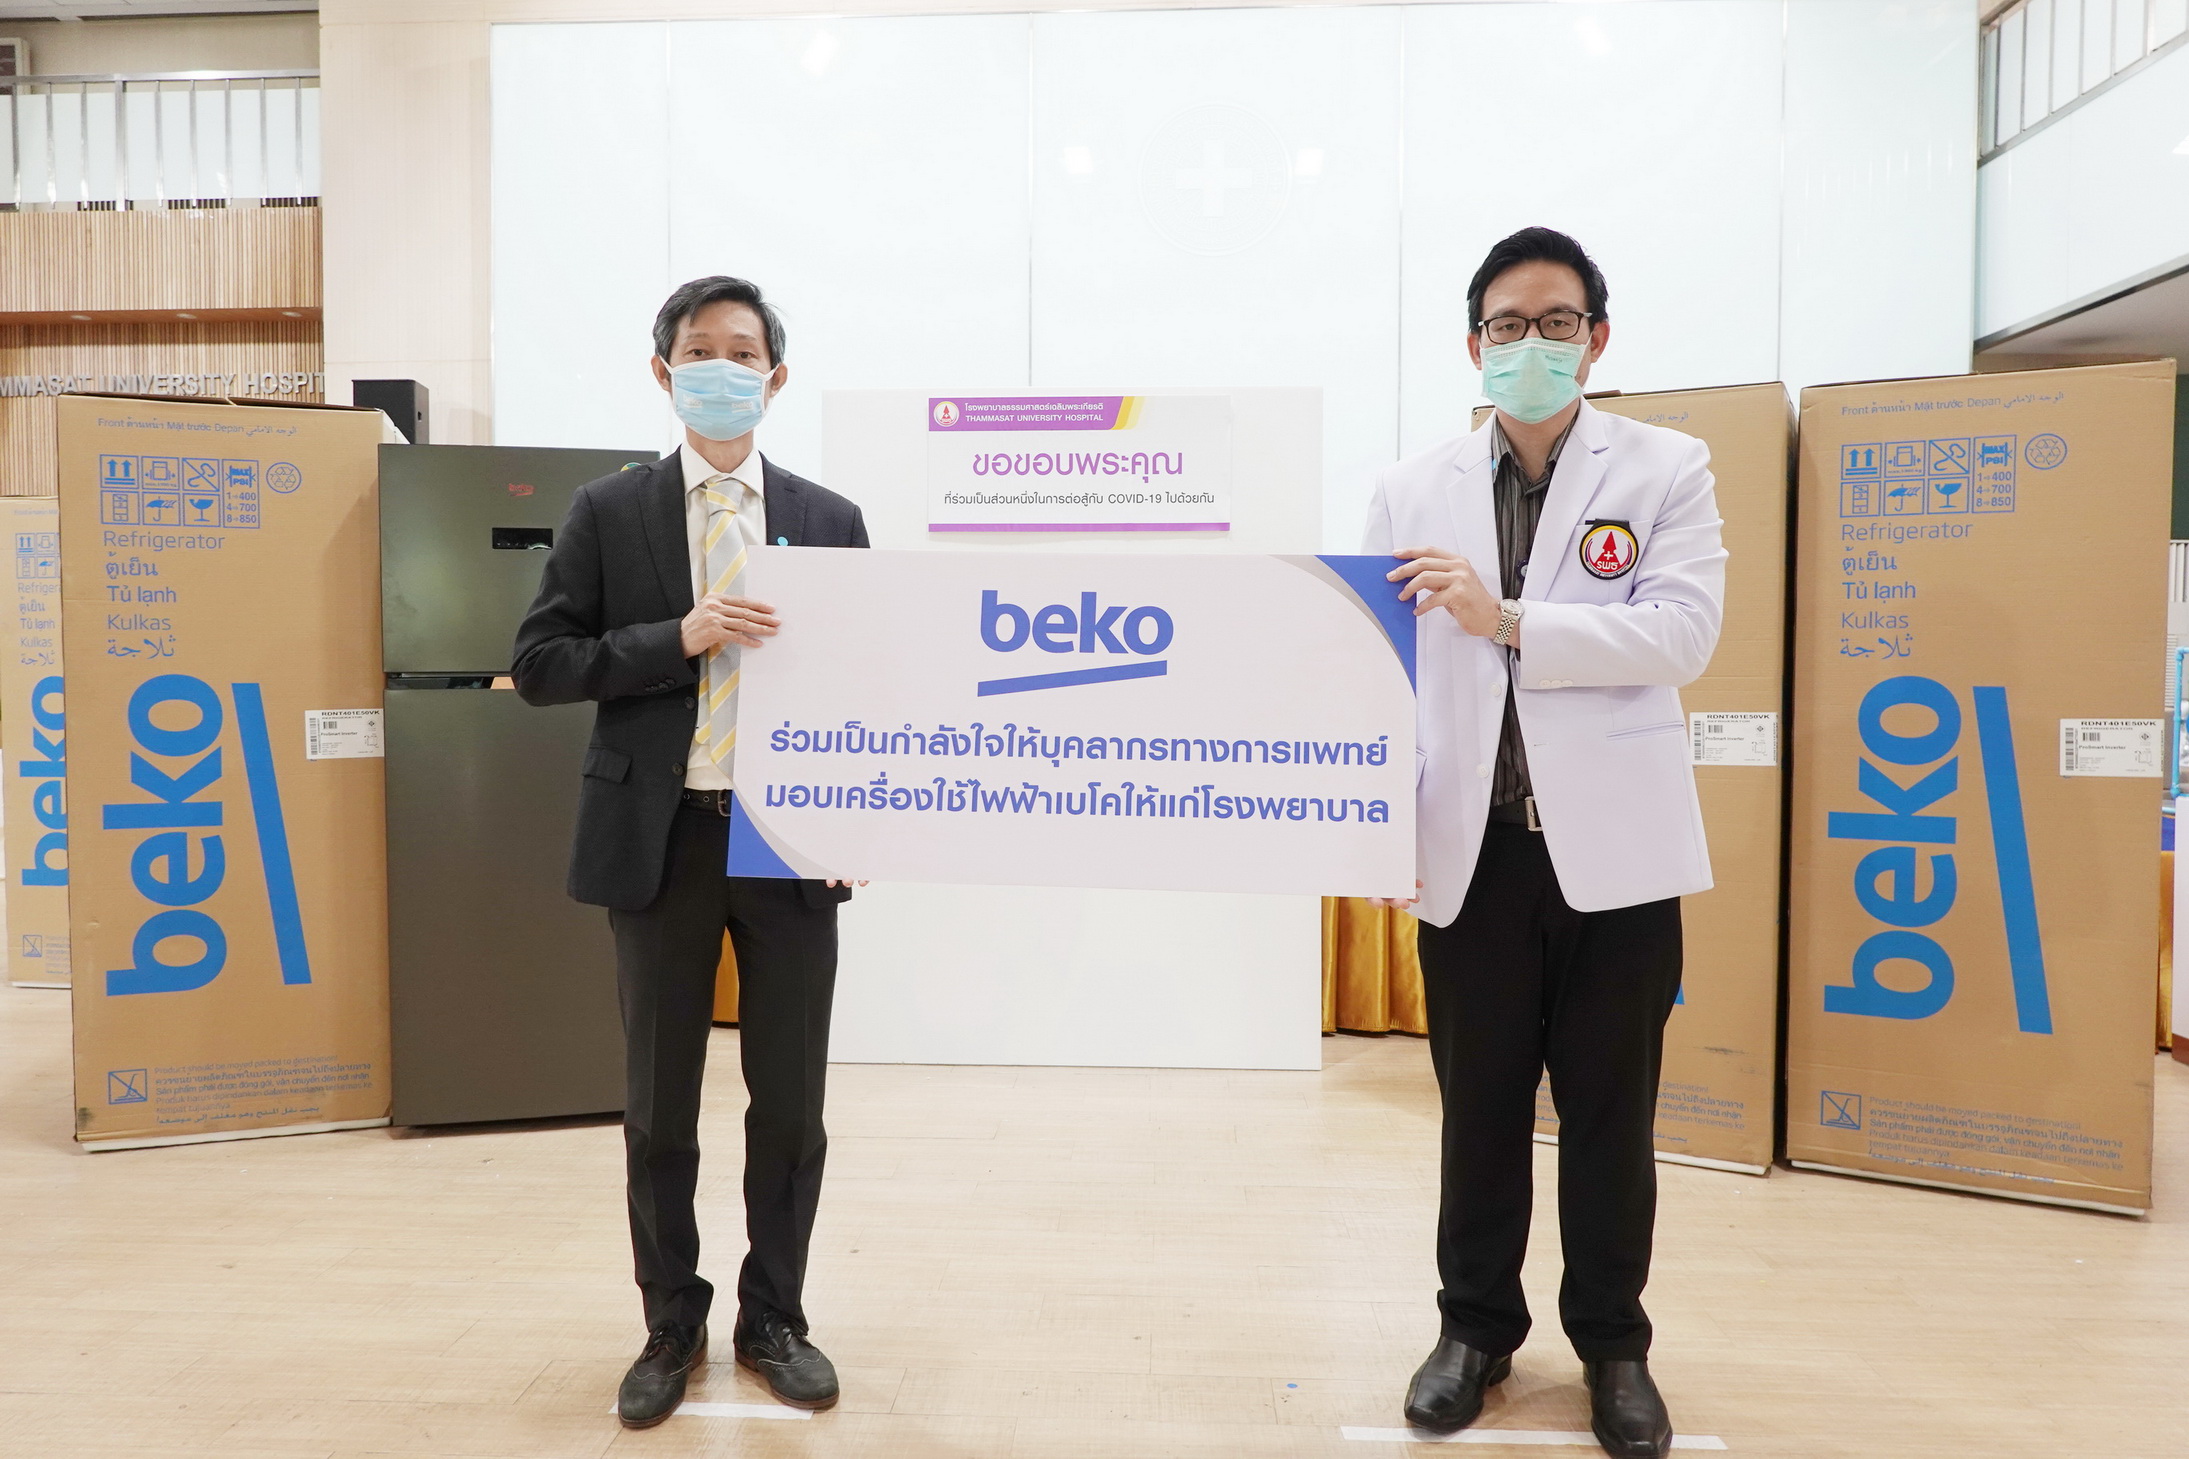 Beko ร่วมเป็นส่วนหนึ่งในการสนับสนุนบุคลากรทางการแพทย์ทั่วประเทศไทยต่อสู้กับเชื้อไวรัส COVID-19